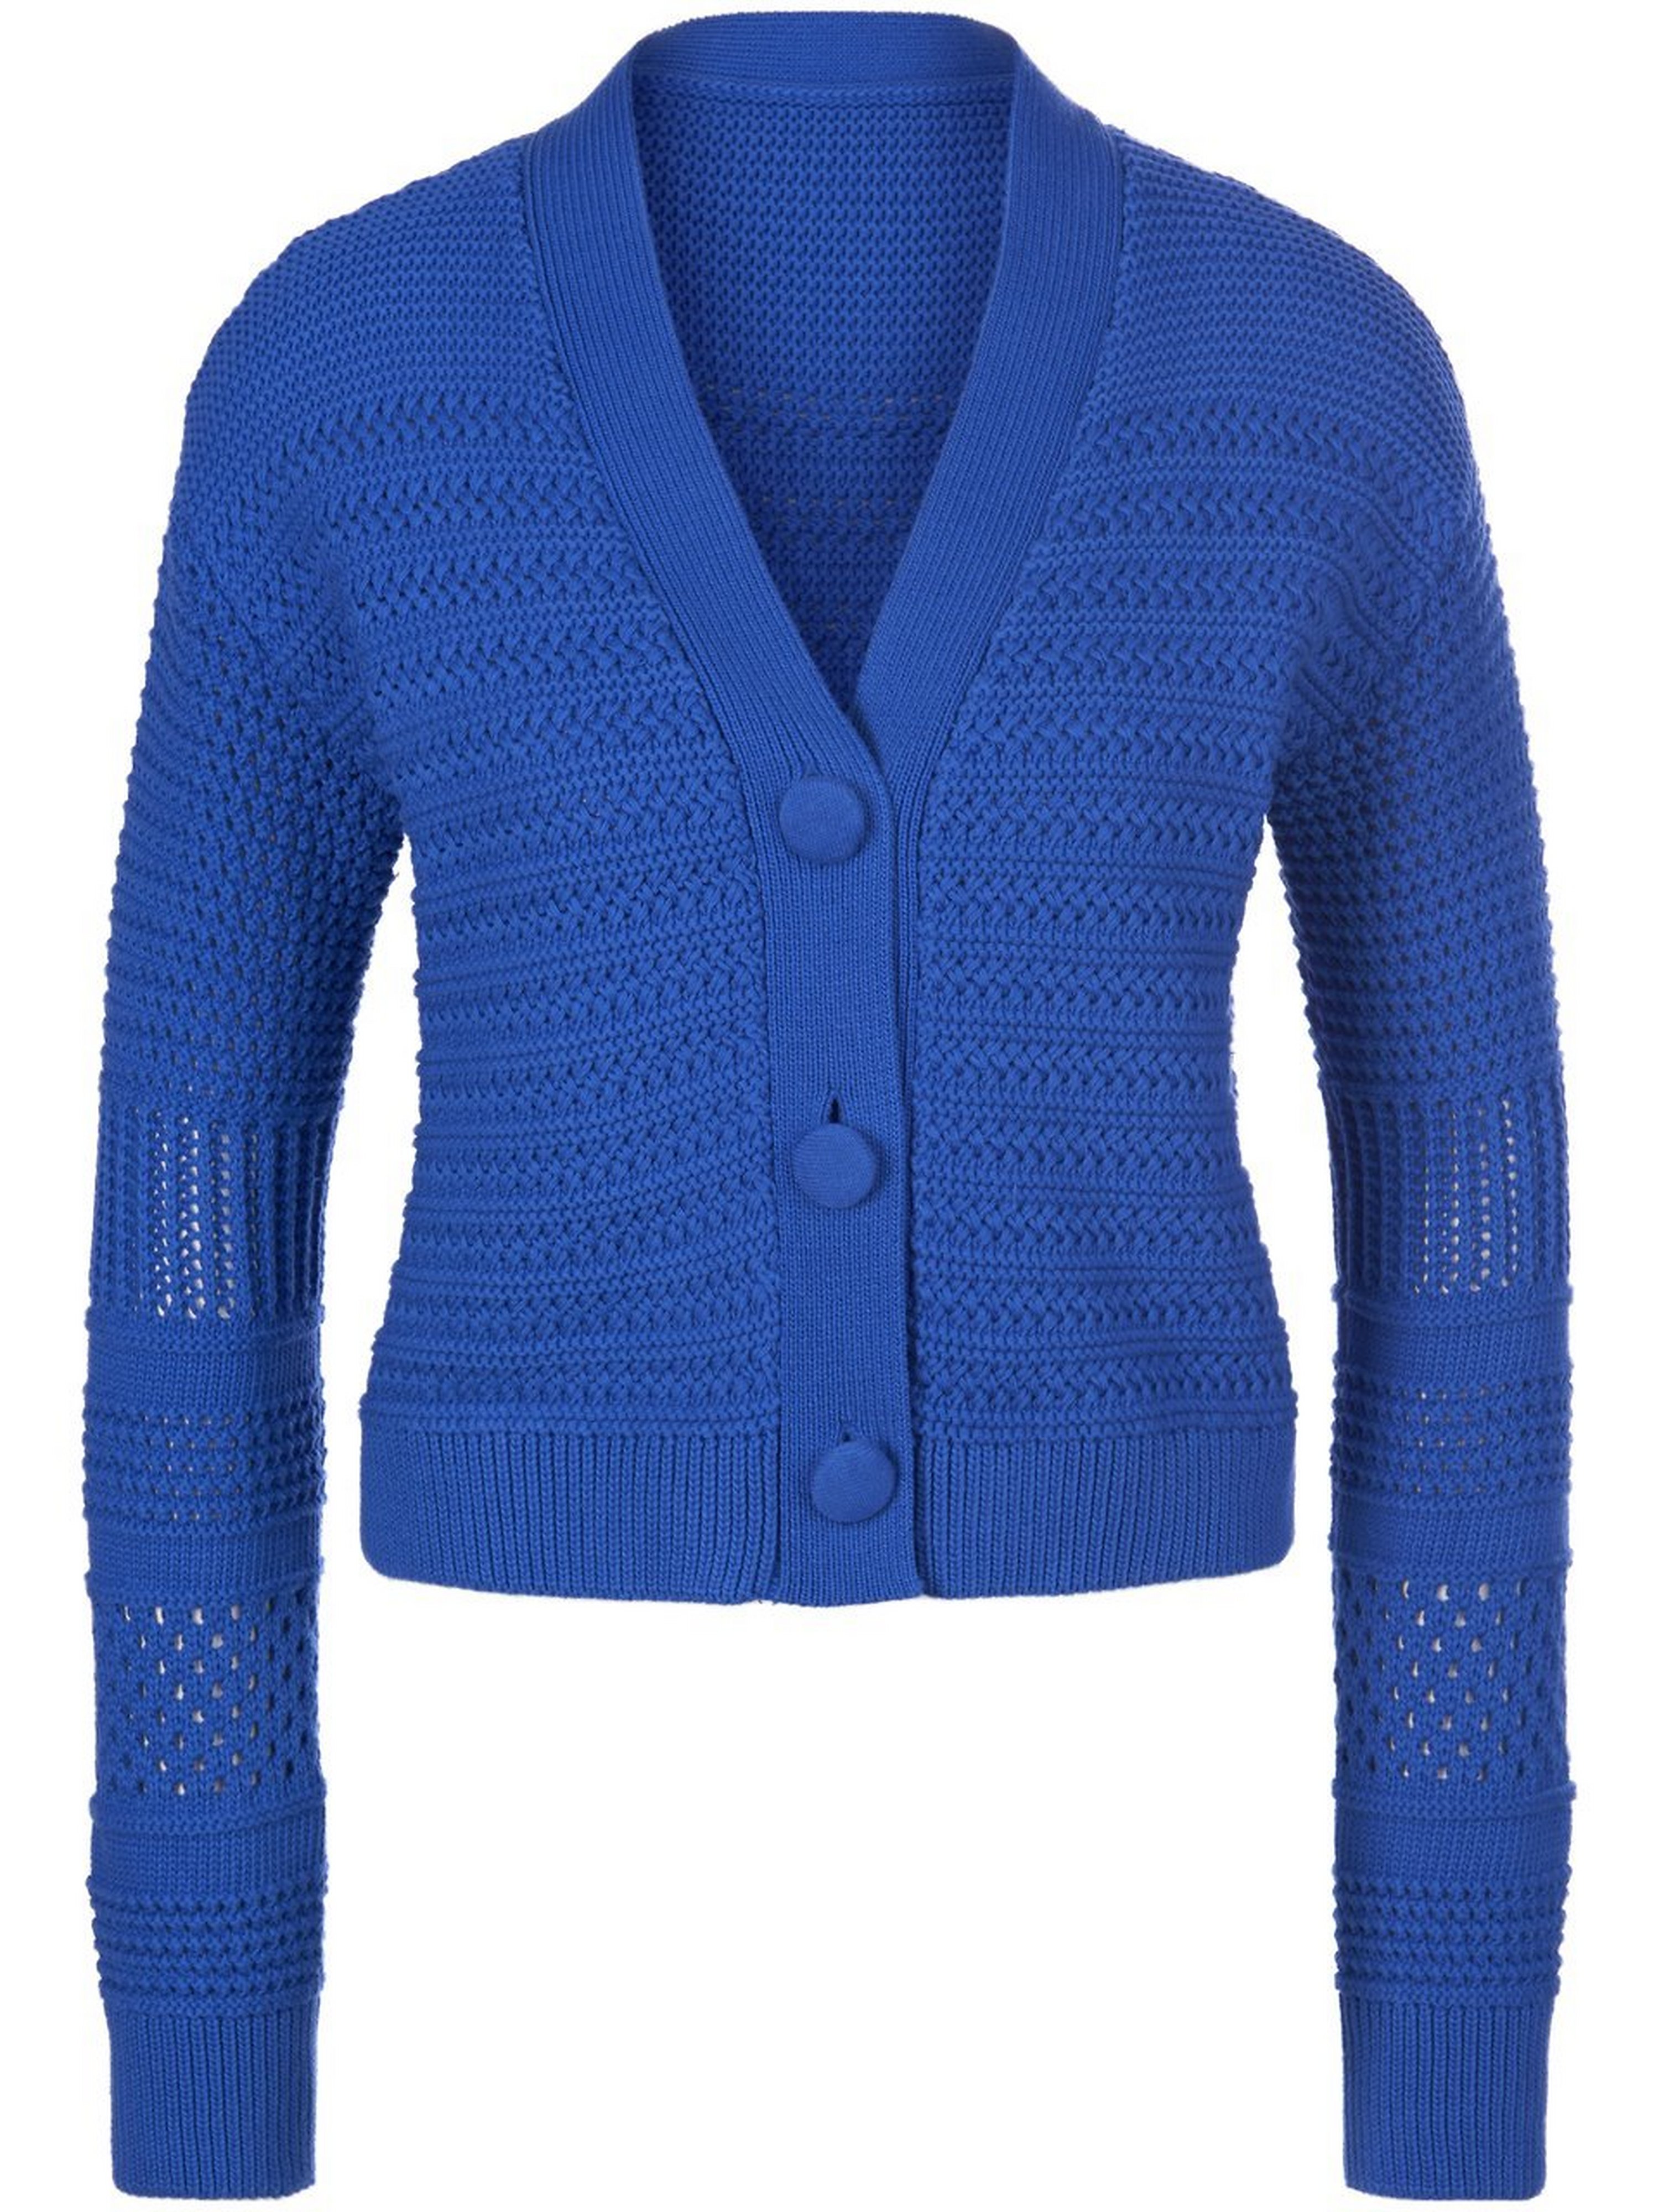 La veste tricot  Saint Mignar bleu taille 40